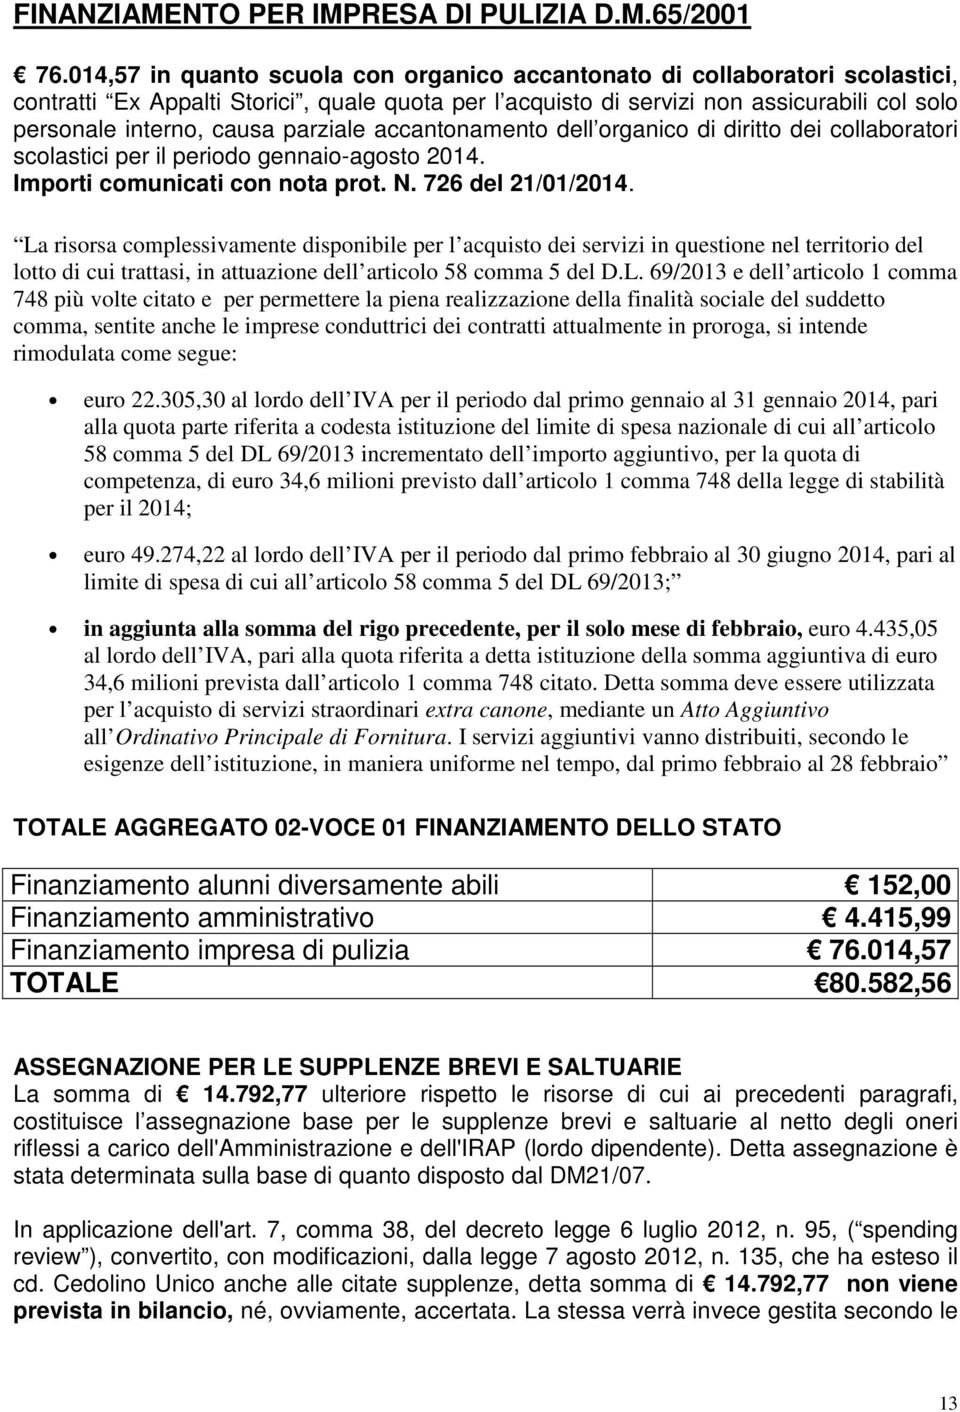 parziale accantonamento dell organico di diritto dei collaboratori scolastici per il periodo gennaio-agosto 2014. Importi comunicati con nota prot. N. 726 del 21/01/2014.